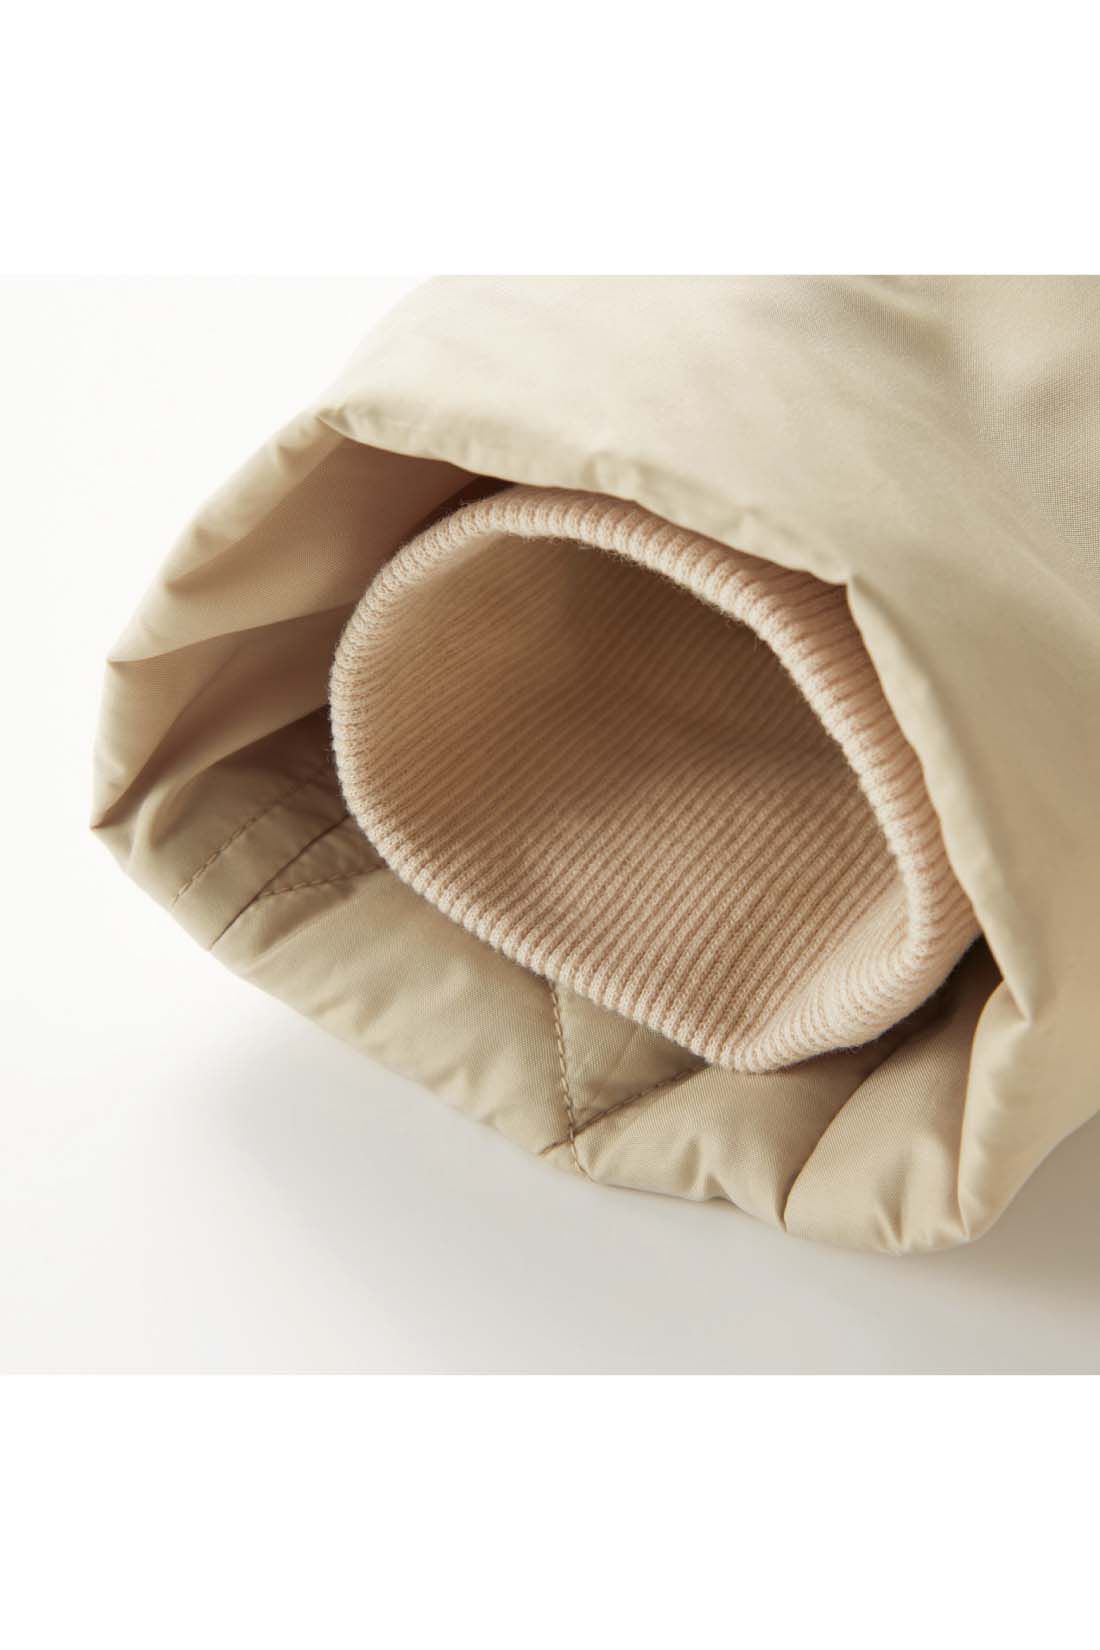 Live in  comfort|リブ イン コンフォート　寝袋みたいにあったか！細見せにこだわった撥水（はっすい）超ロングダウンコート〈ブラック〉|すっきり見える袖口は、すき間風を防ぐため内側にリブをしのばせています。